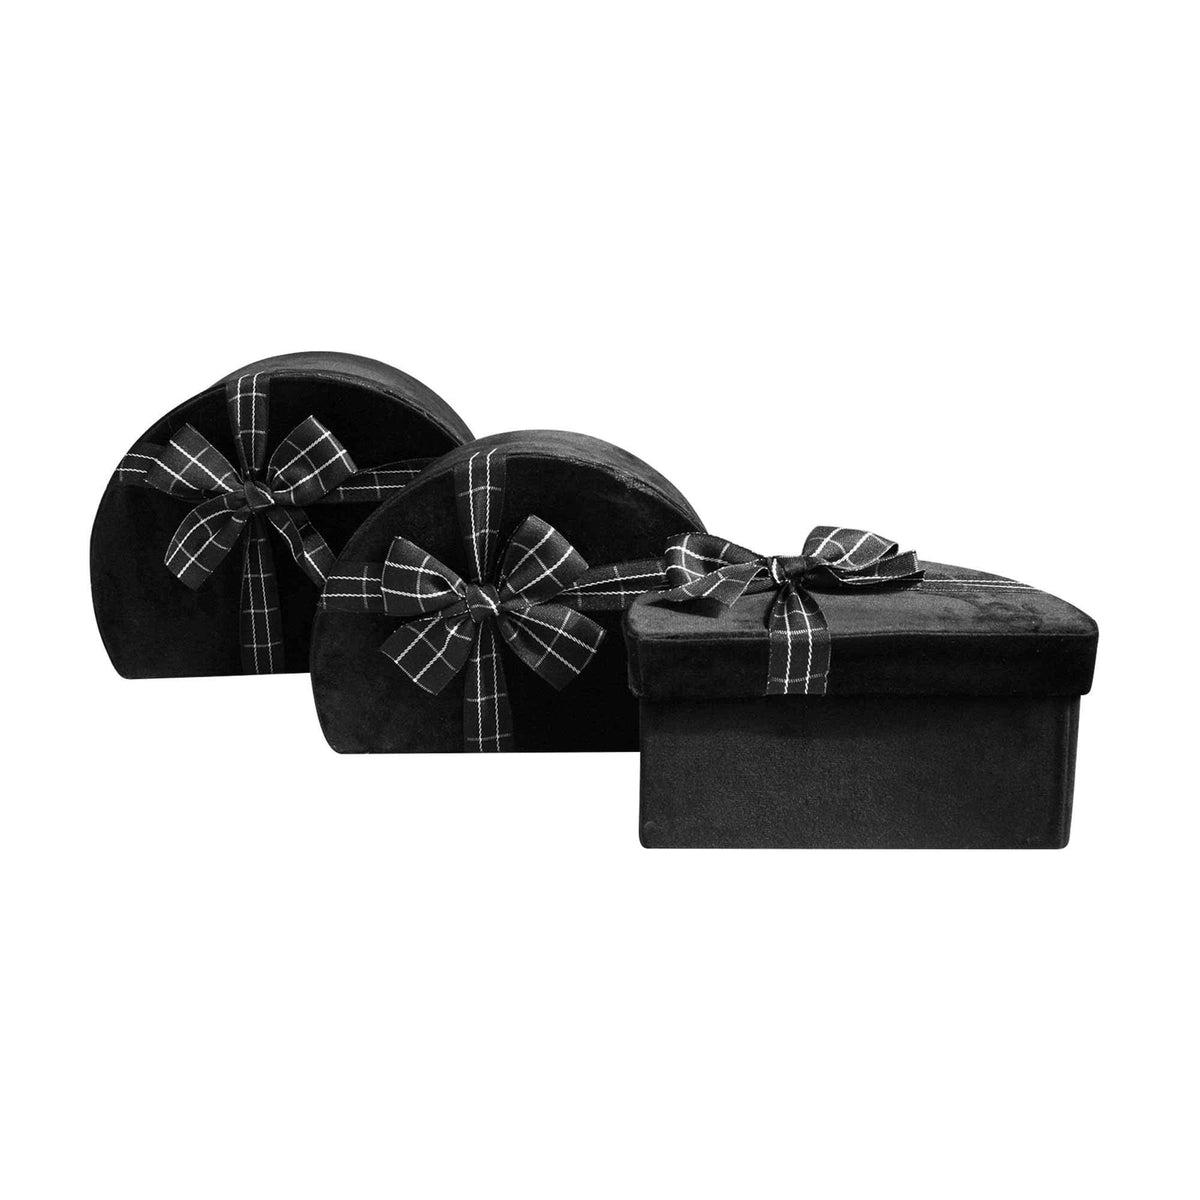 Set of 3 Black Velvet Gift Boxes with Striped Ribbon